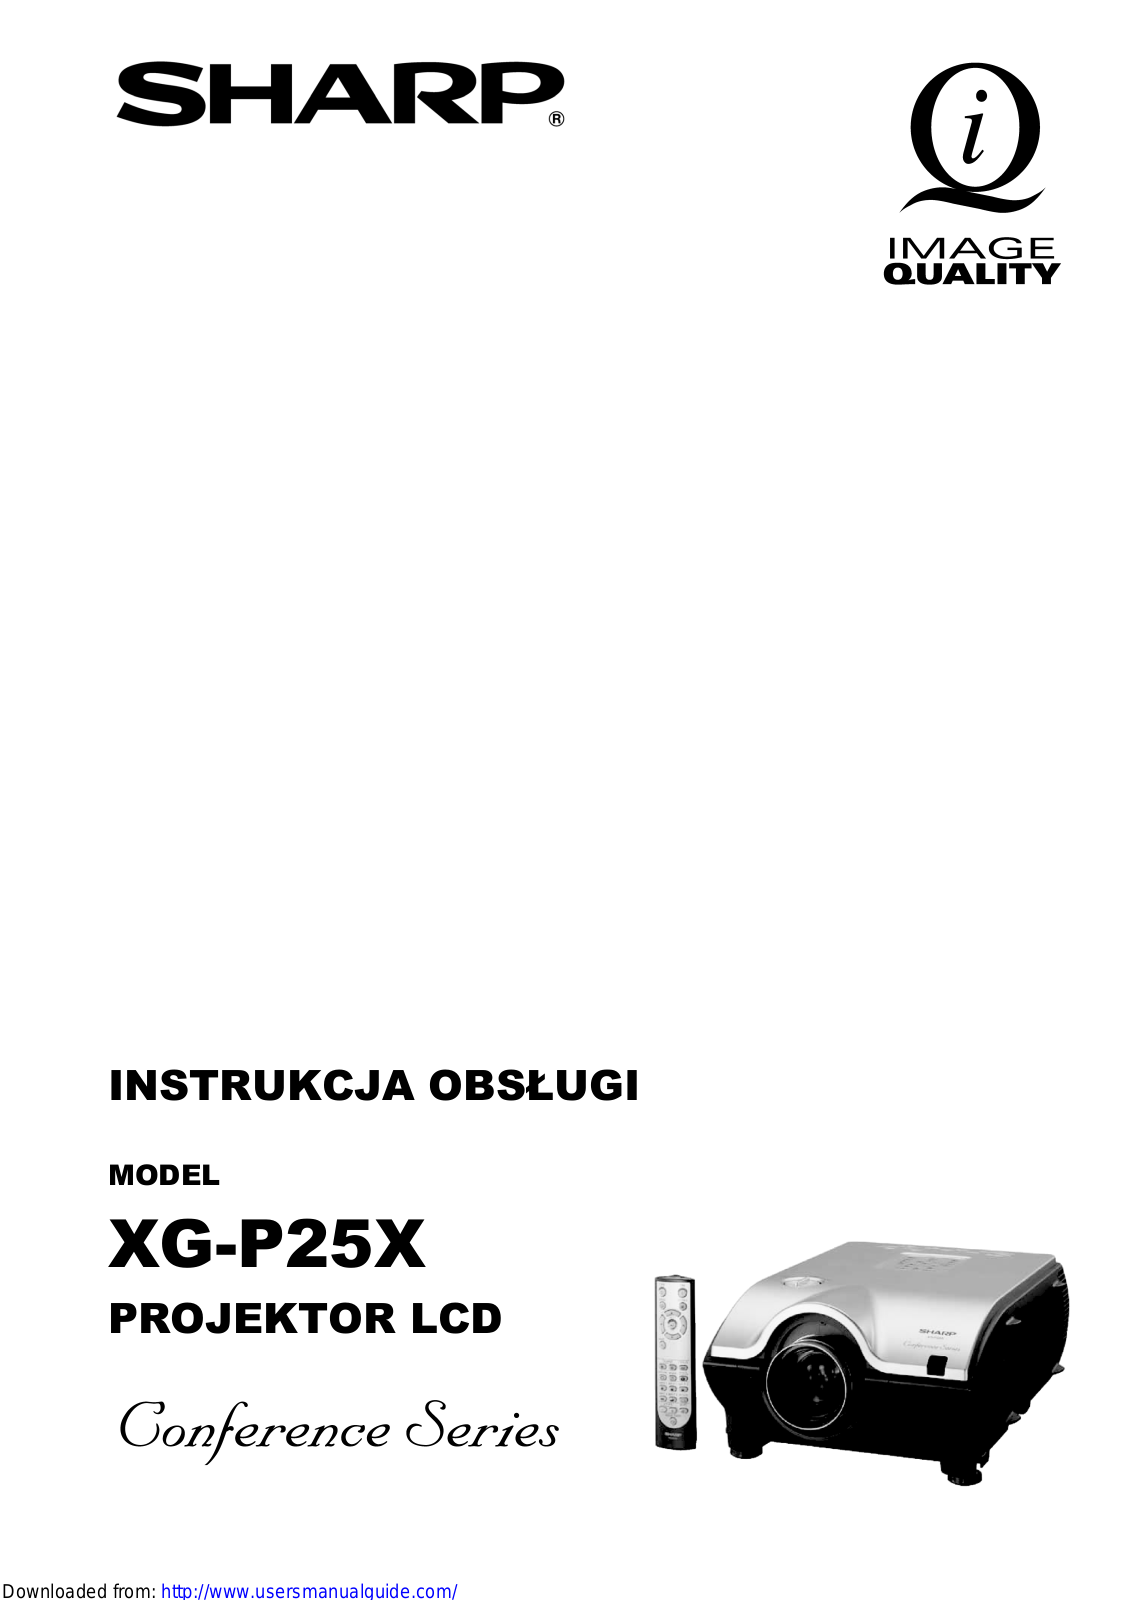 SHARP XG-P25XE User Manual